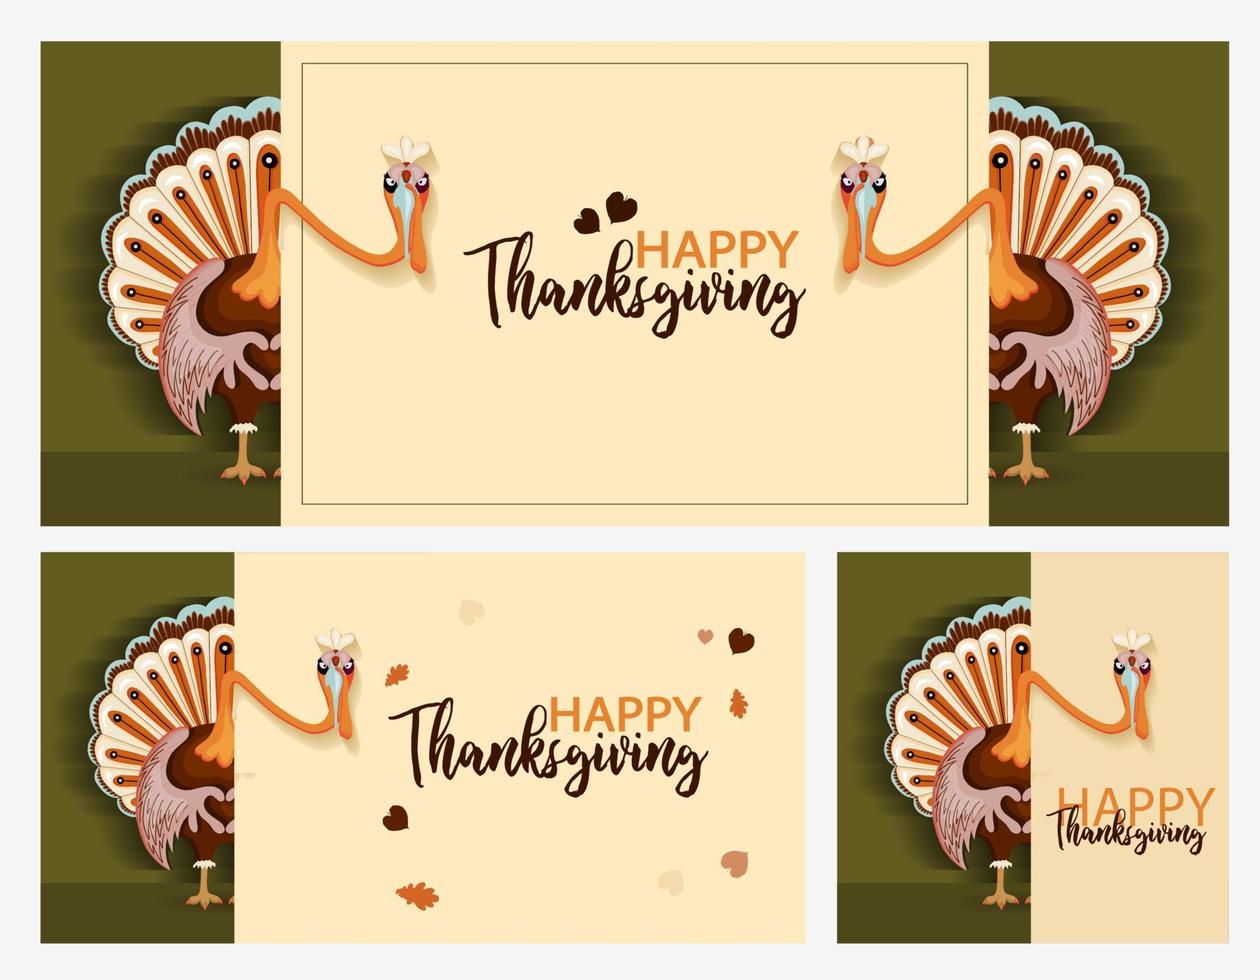 jeu d'automne de thanksgiving. illustration vectorielle merci peinture numérique, jolie bannière de dinde, carte. fond festif avec dinde drôle vecteur